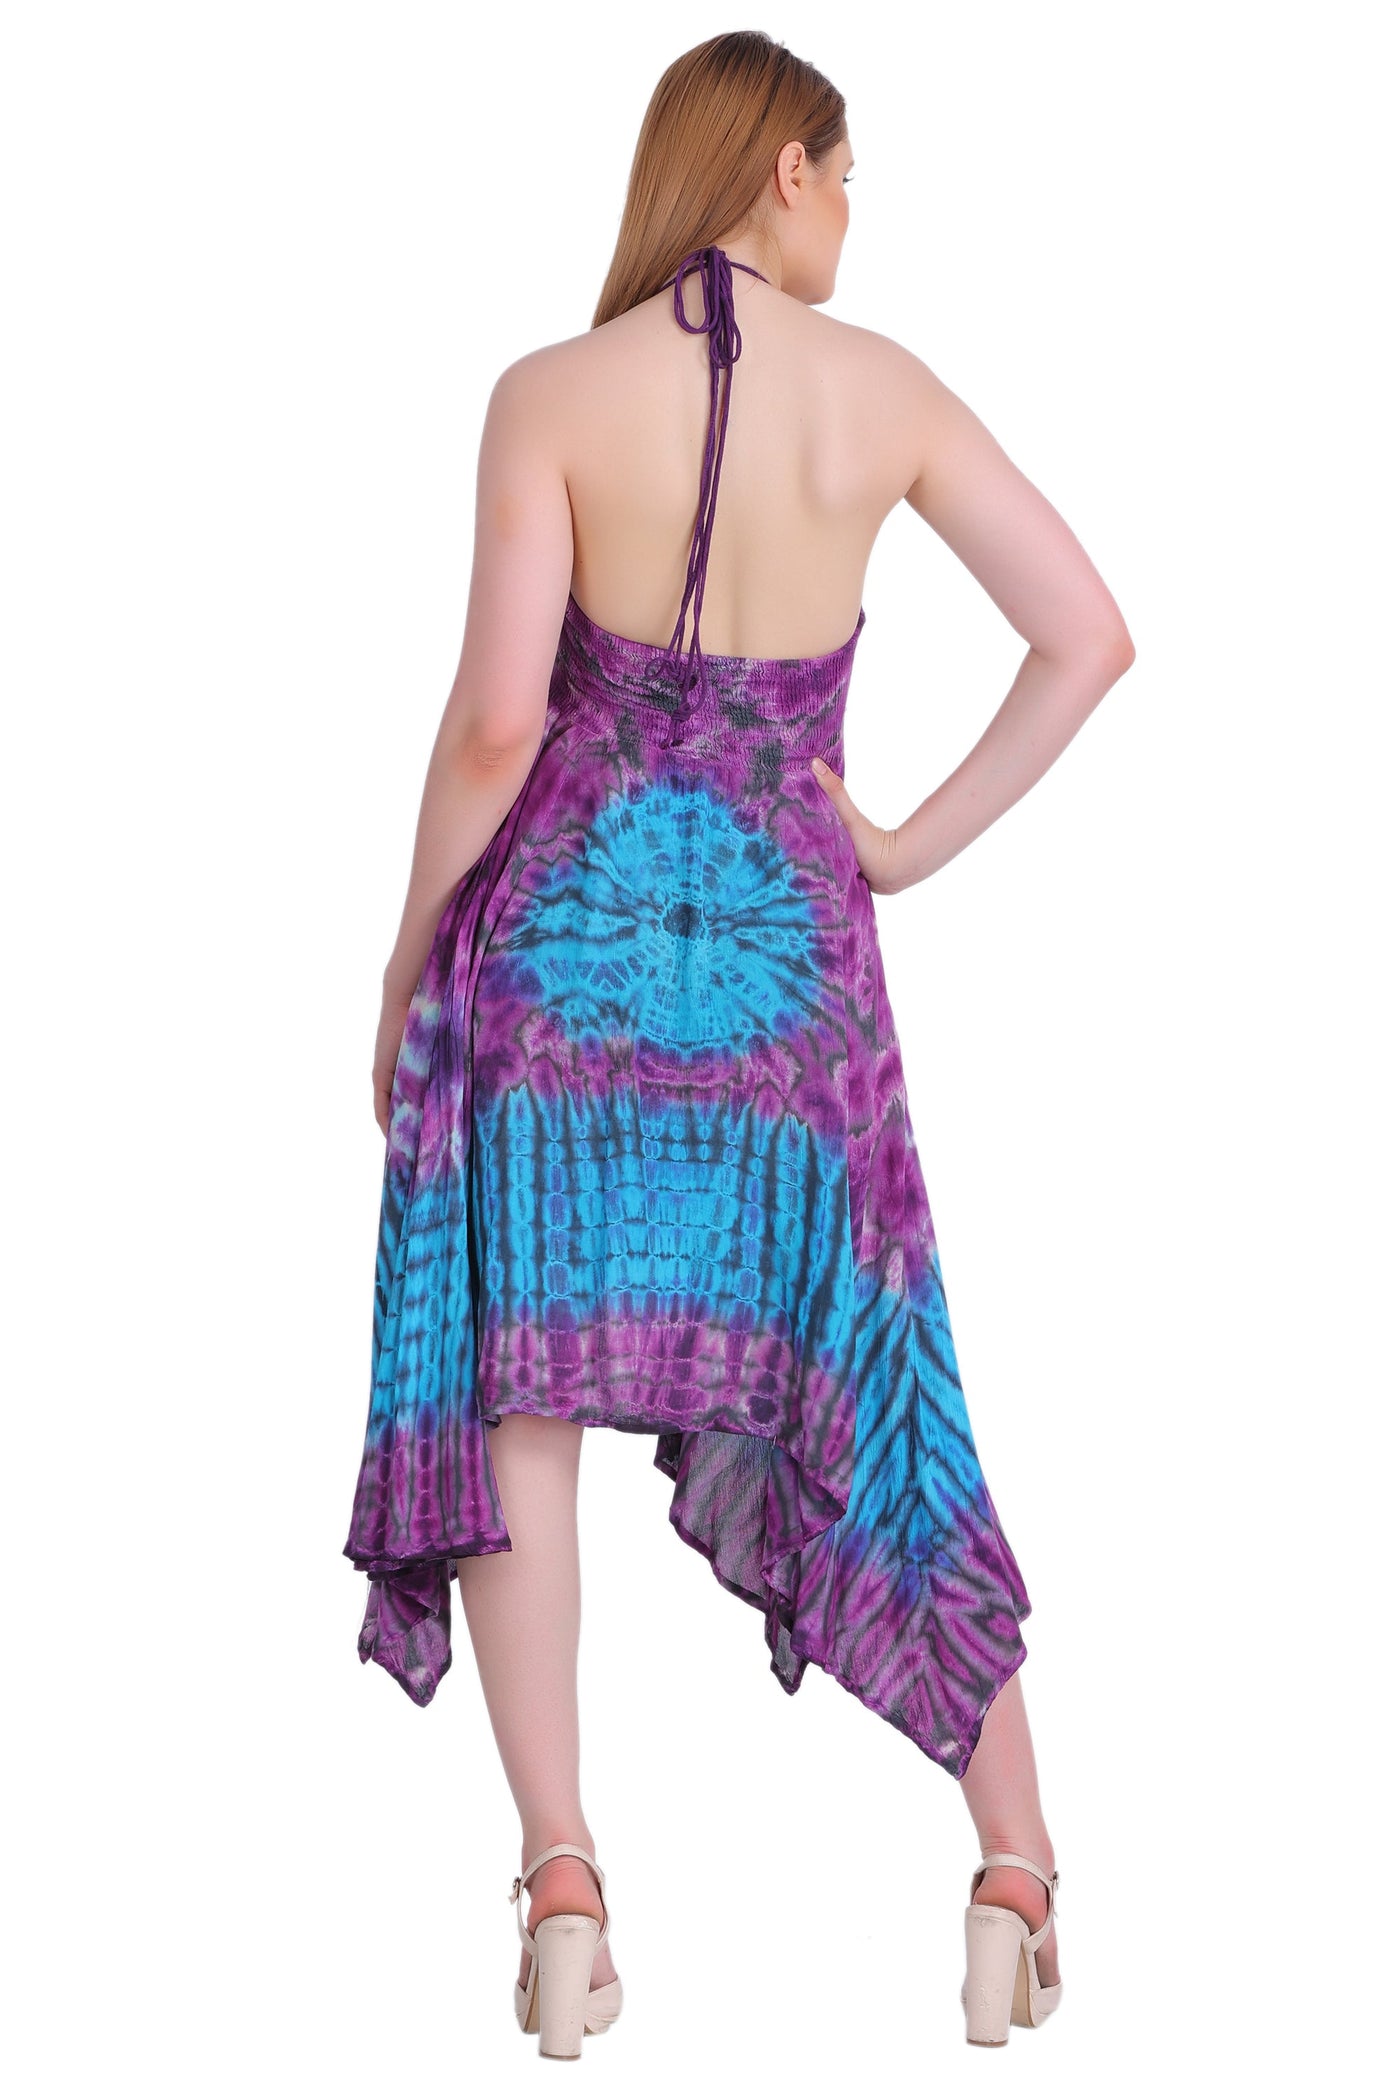 Tie Dye Acid Wash Dress (S/M-1X/2X) 4 Colors ADL30331